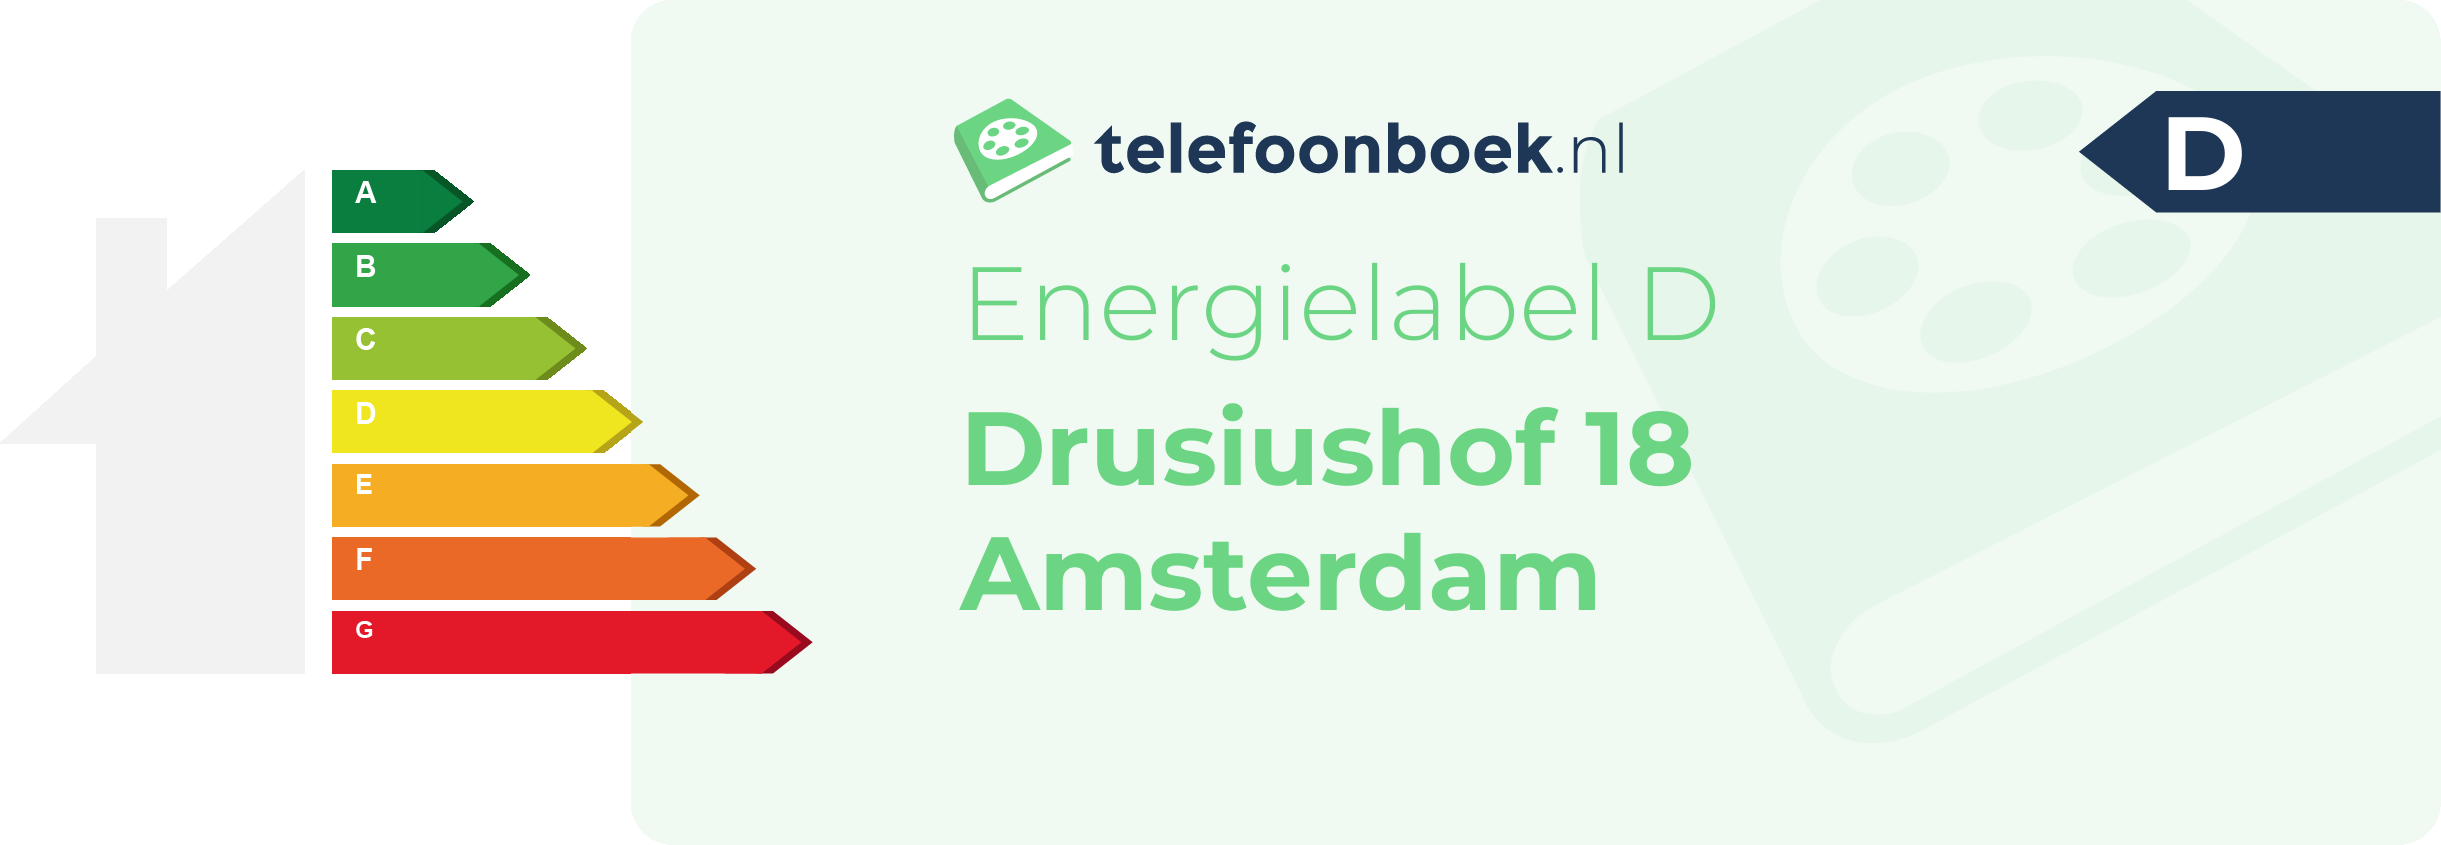 Energielabel Drusiushof 18 Amsterdam